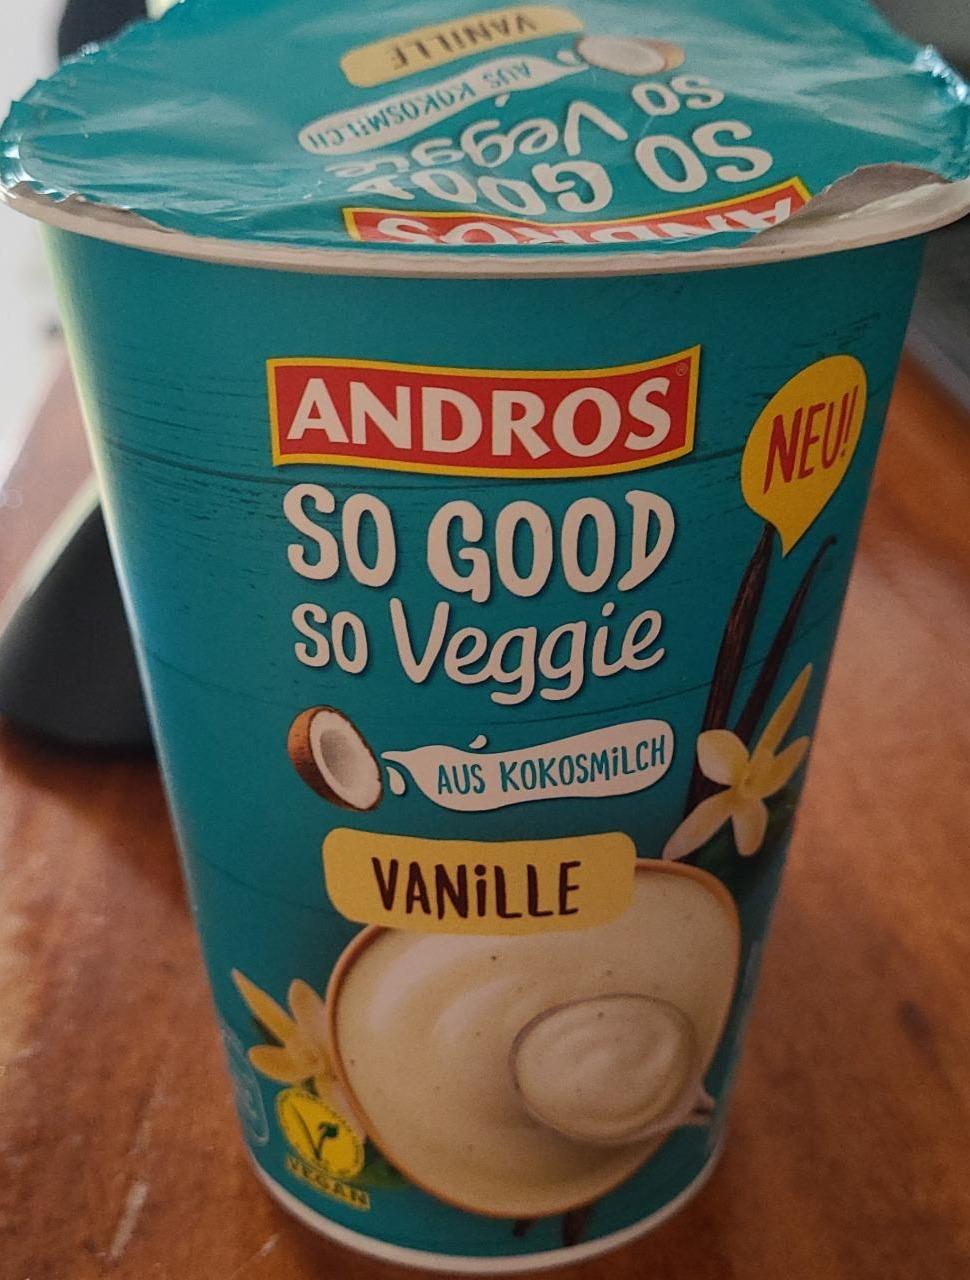 Fotografie - So good So veggie Aus kokosmilch Vanille Andros